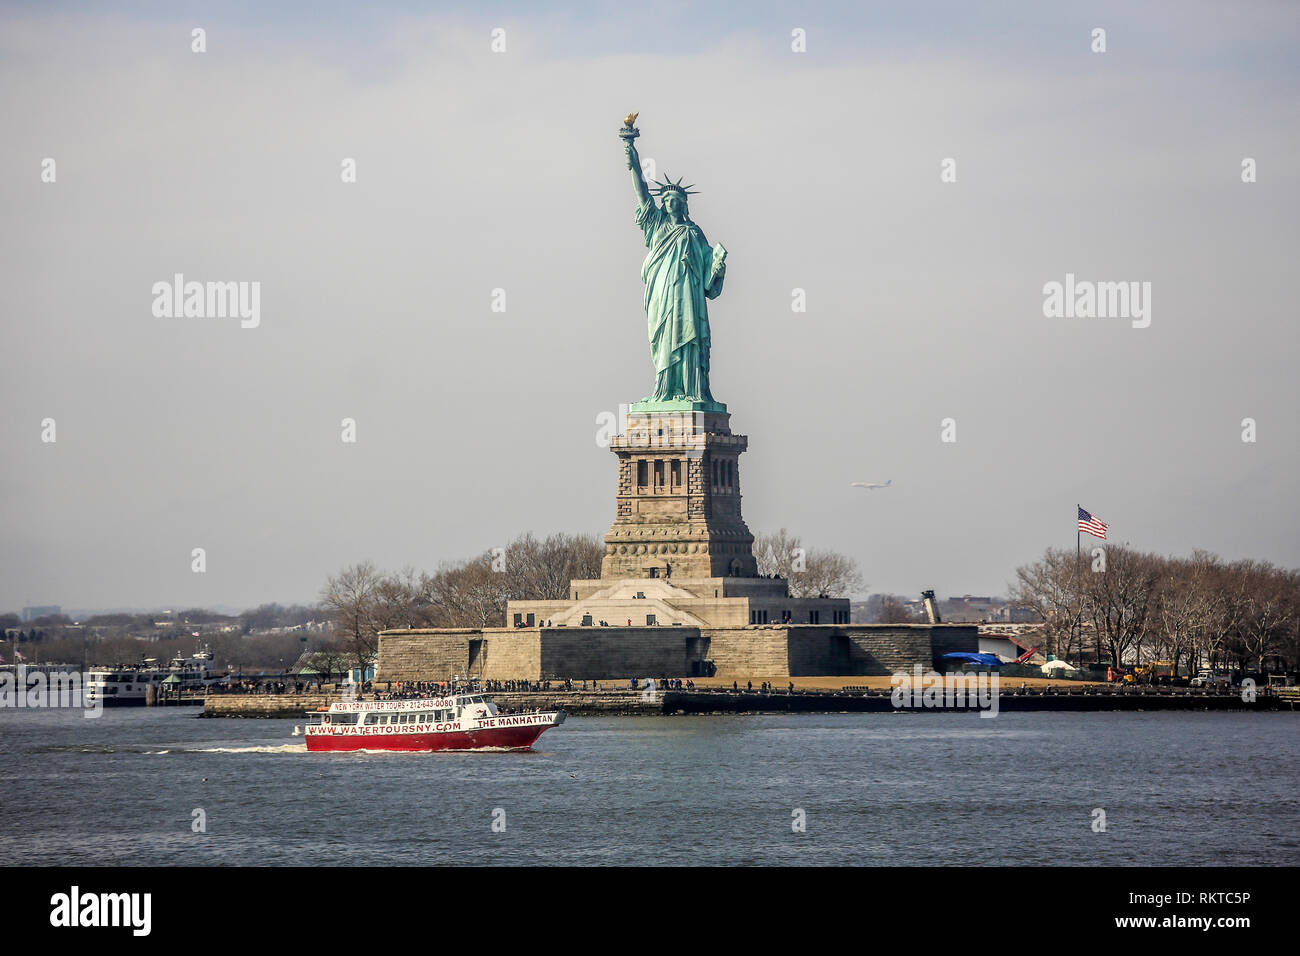 La città di New York, New York, Stati Uniti d'America - Statua della Libertà, Liberty Island, Stati Uniti d'America. La città di New York New York, Vereinigte Staaten von Amerika - Foto Stock